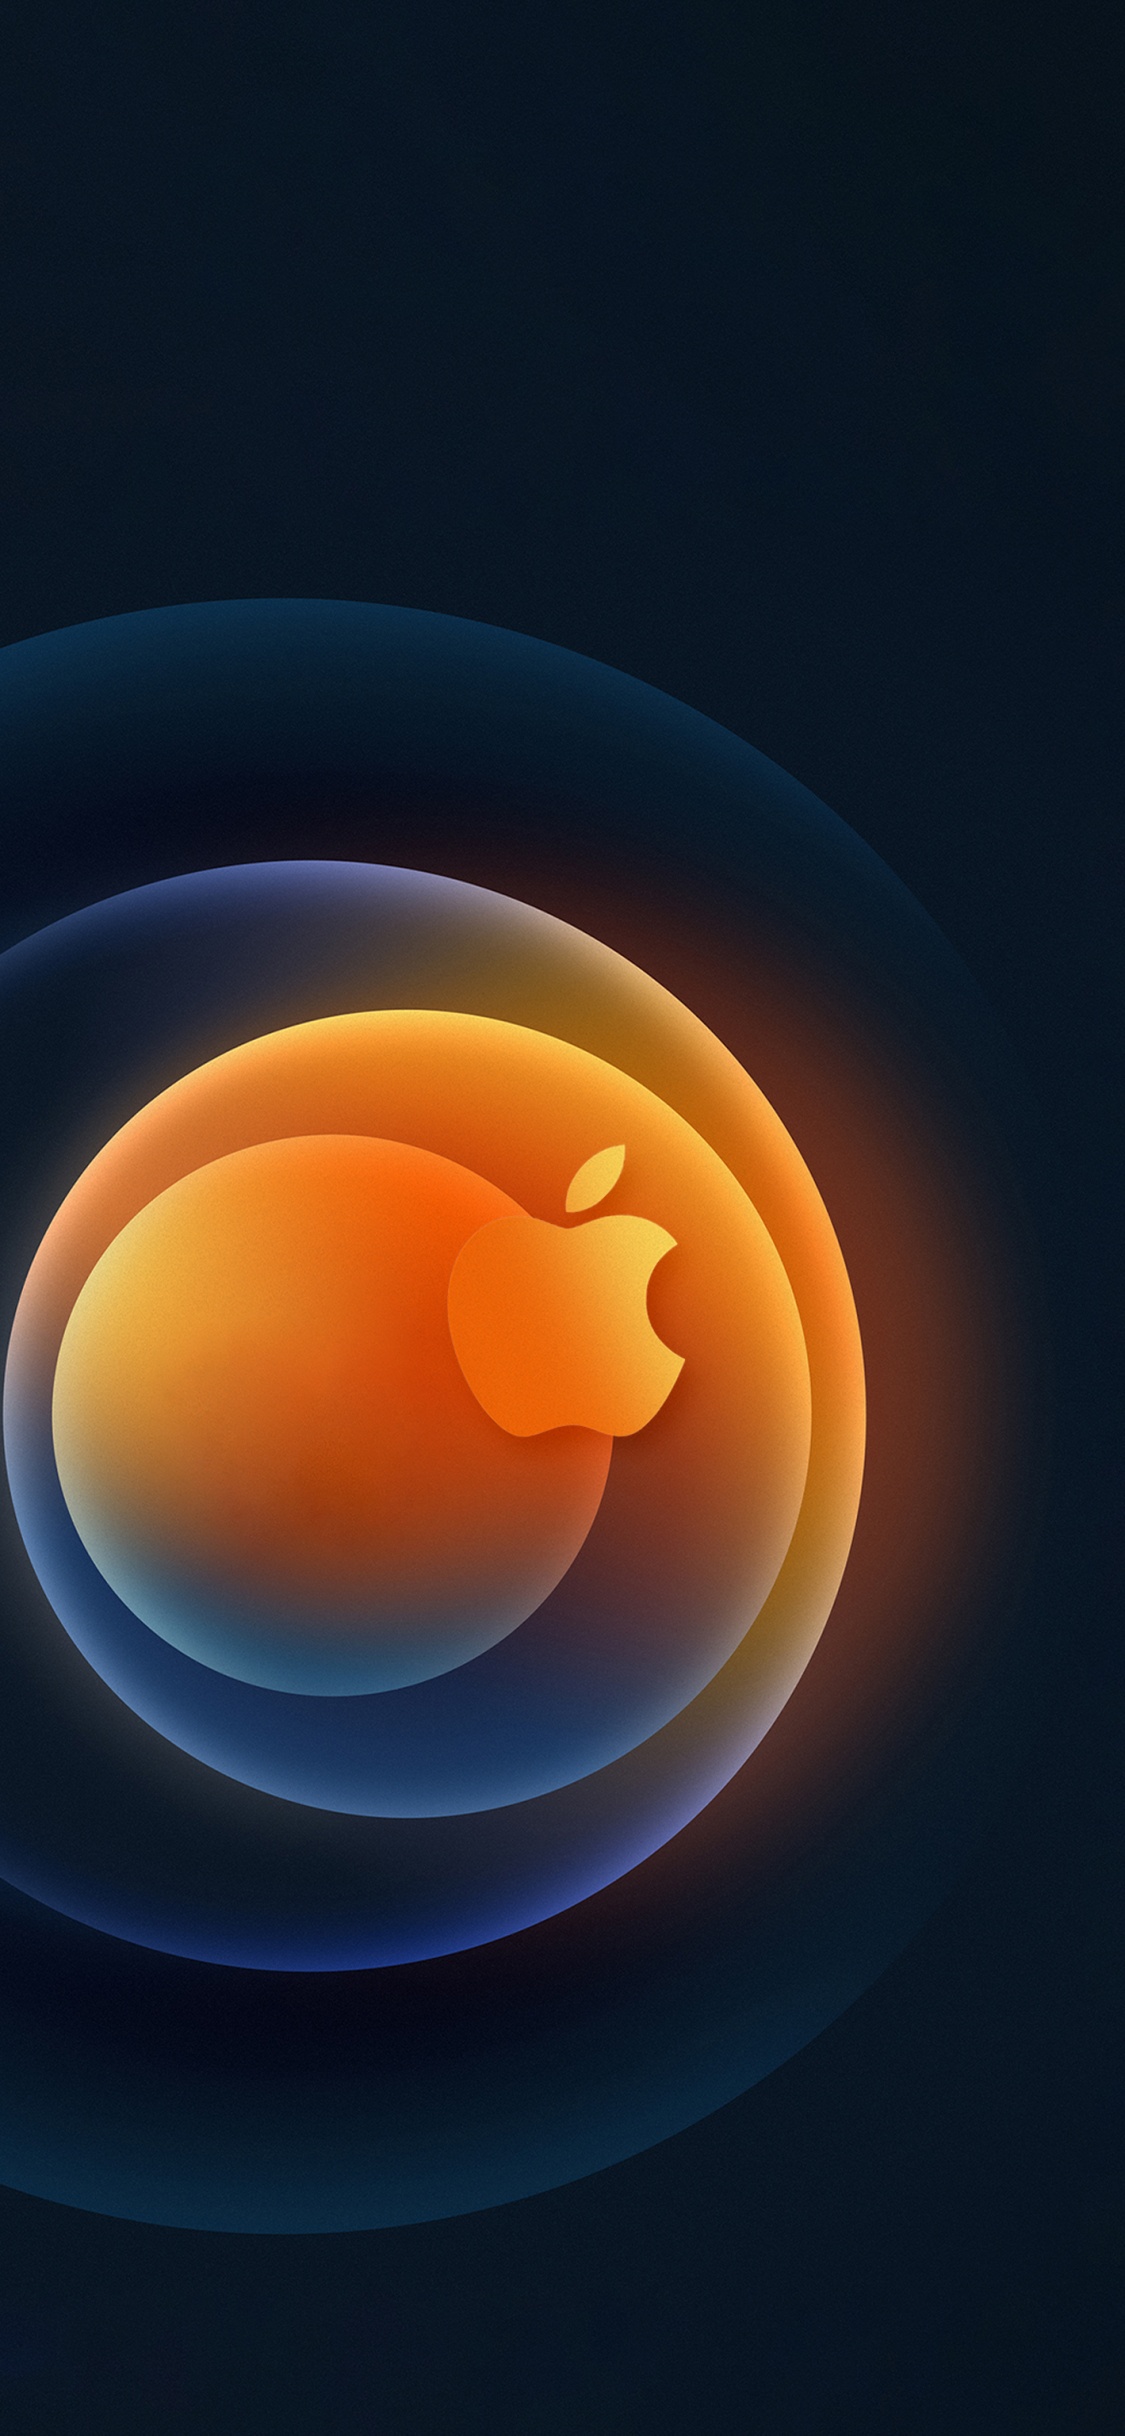 Apple, IPhone, Äpfeln, Orange, Farbigkeit. Wallpaper in 1125x2436 Resolution